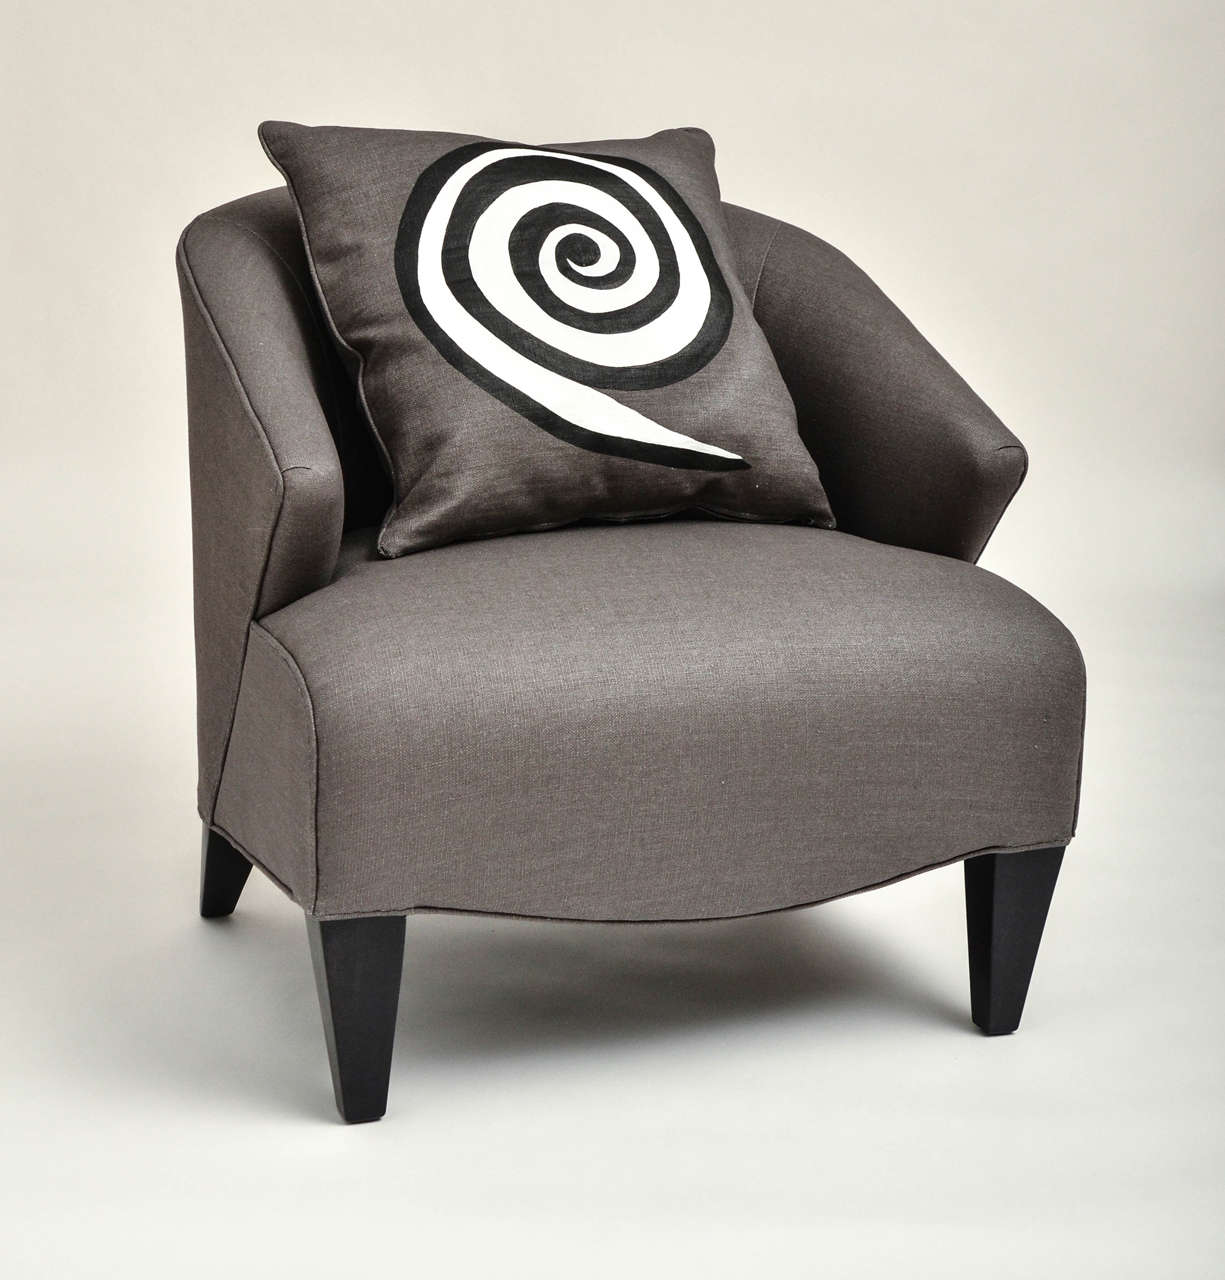 Neu gepolsterter Mid-Century Modern Stuhl in grauem Leinen mit einem schwarz-weißen handbemalten Kissen. 

Neu lackierte Beine aus gebeiztem Ebenholz.

Sehr bequem.